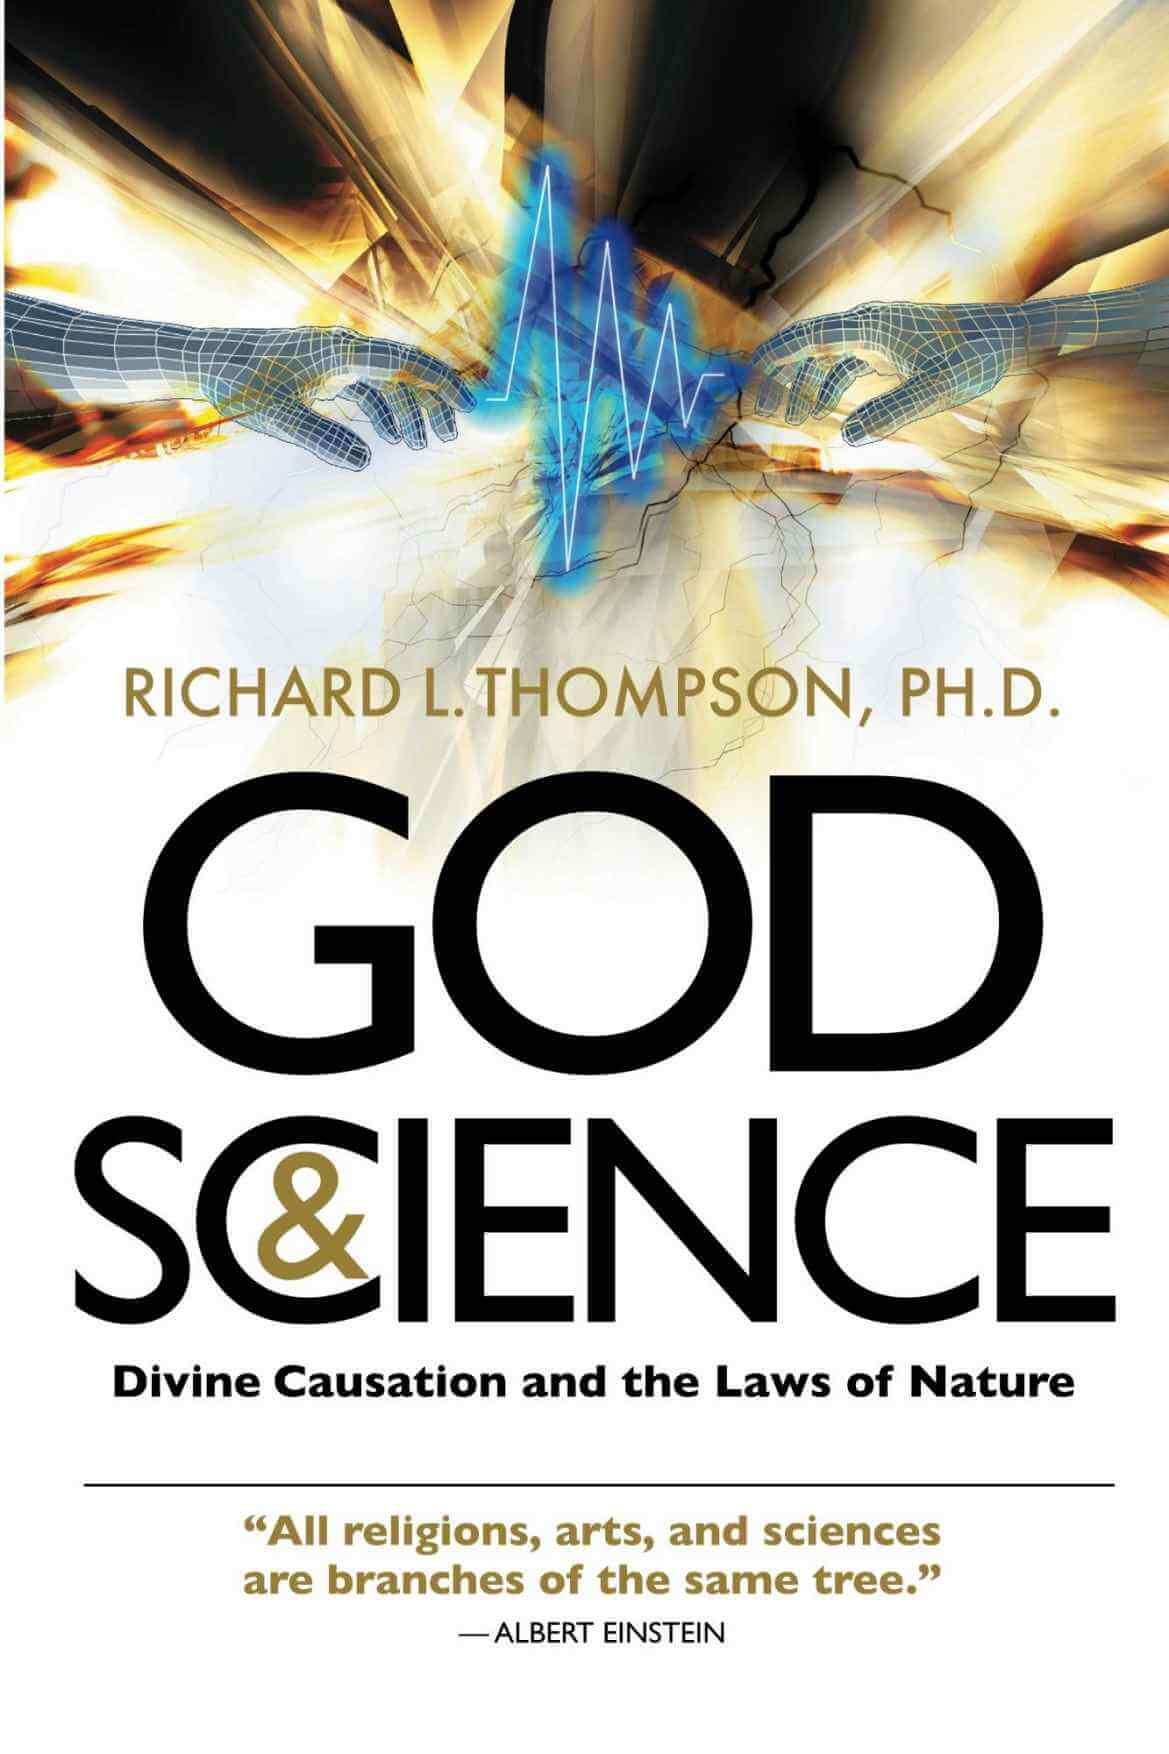 ईश्वर और विज्ञान - दैवीय कारण और प्रकृति के नियम